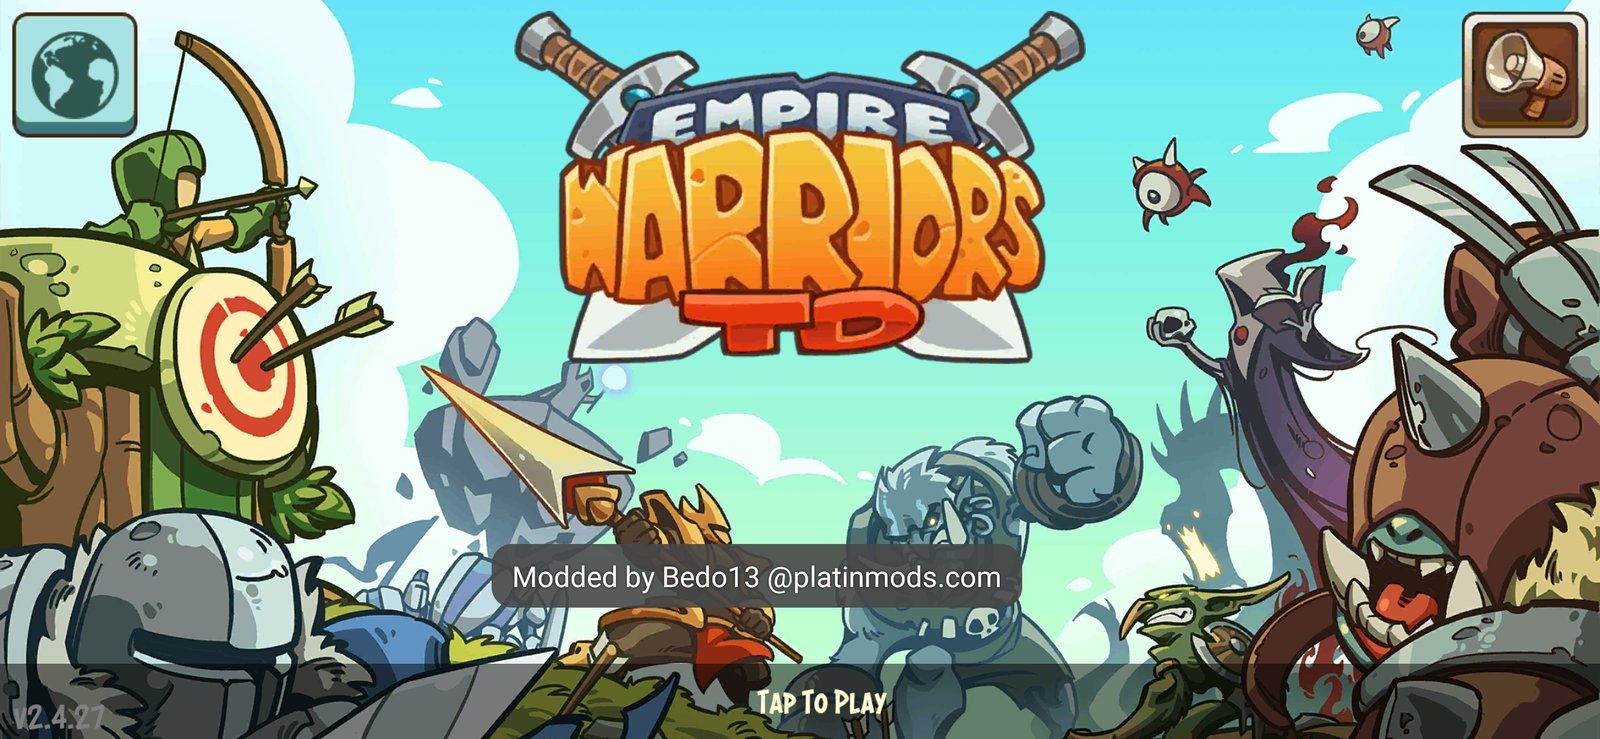 Download Warriors Defend: Tower Defense MOD APK v1.3.5 (Unlimited